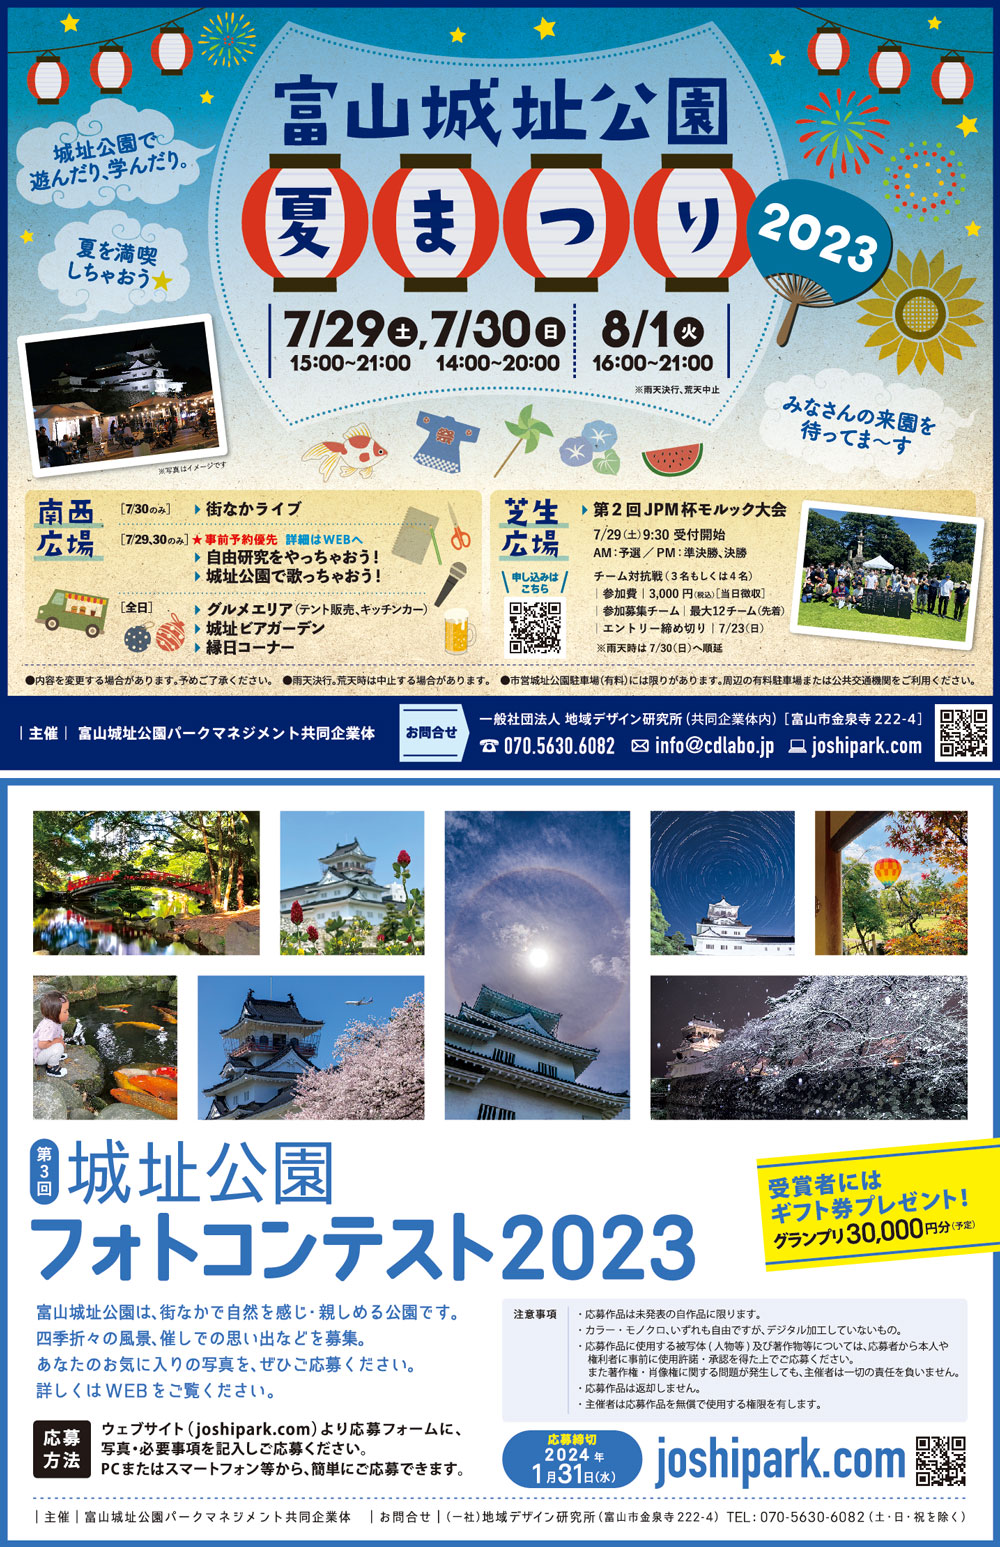 【富山城址公園 夏祭り2023】キッチンカーや音楽ライブなどイベント盛りだくさん！